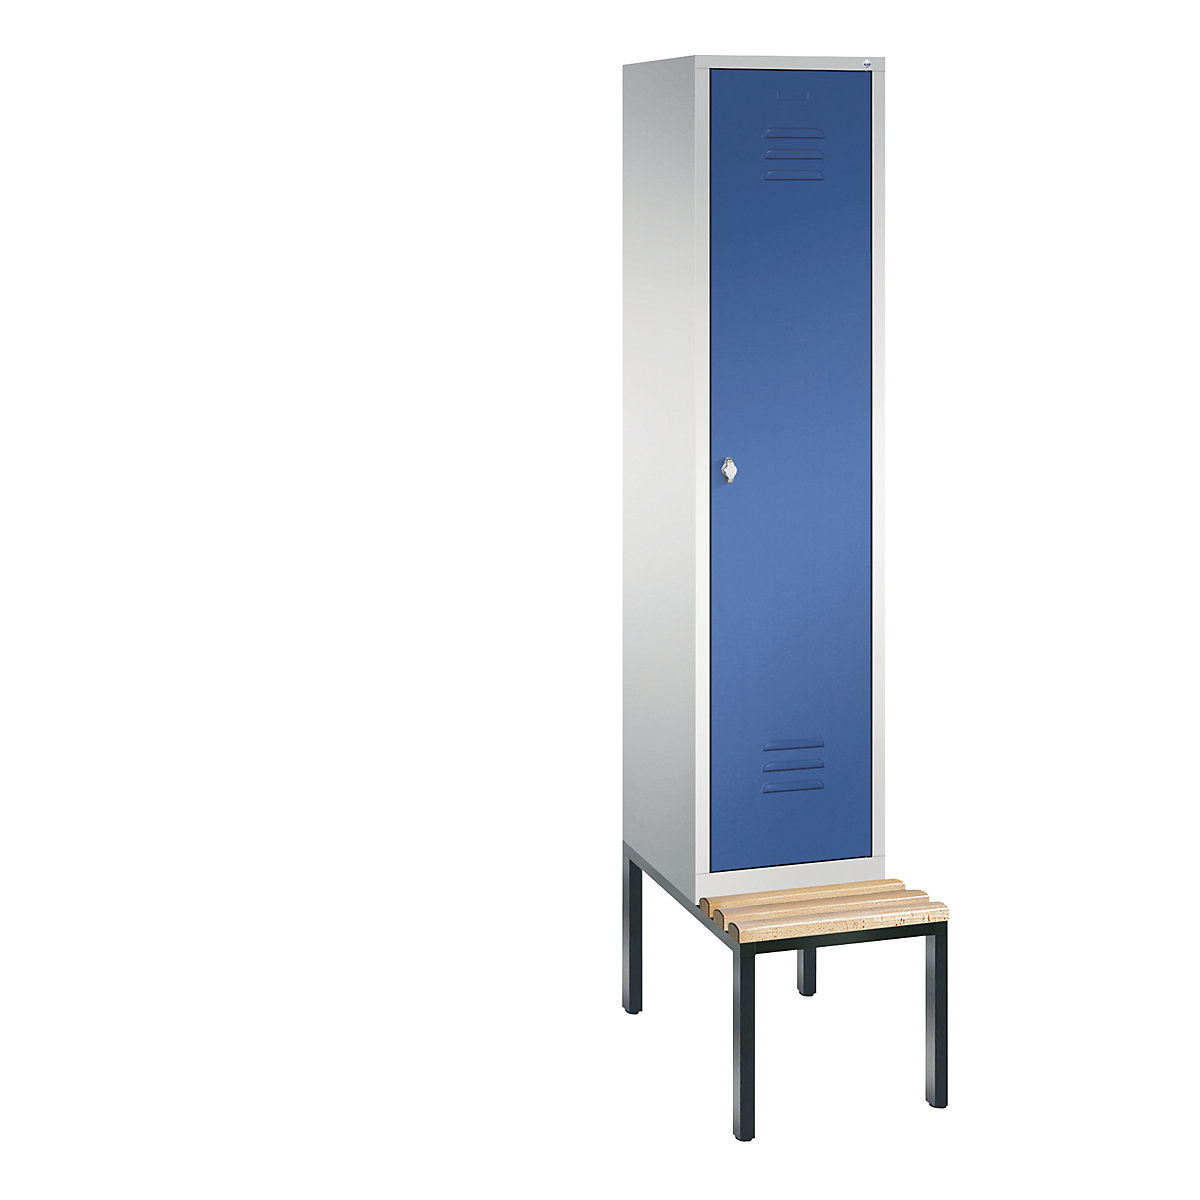 Garderobna omara CLASSIC s klopjo – C+P, 1 predelek, širina 400 mm/predelek, svetlo sive / encijan modre barve-6